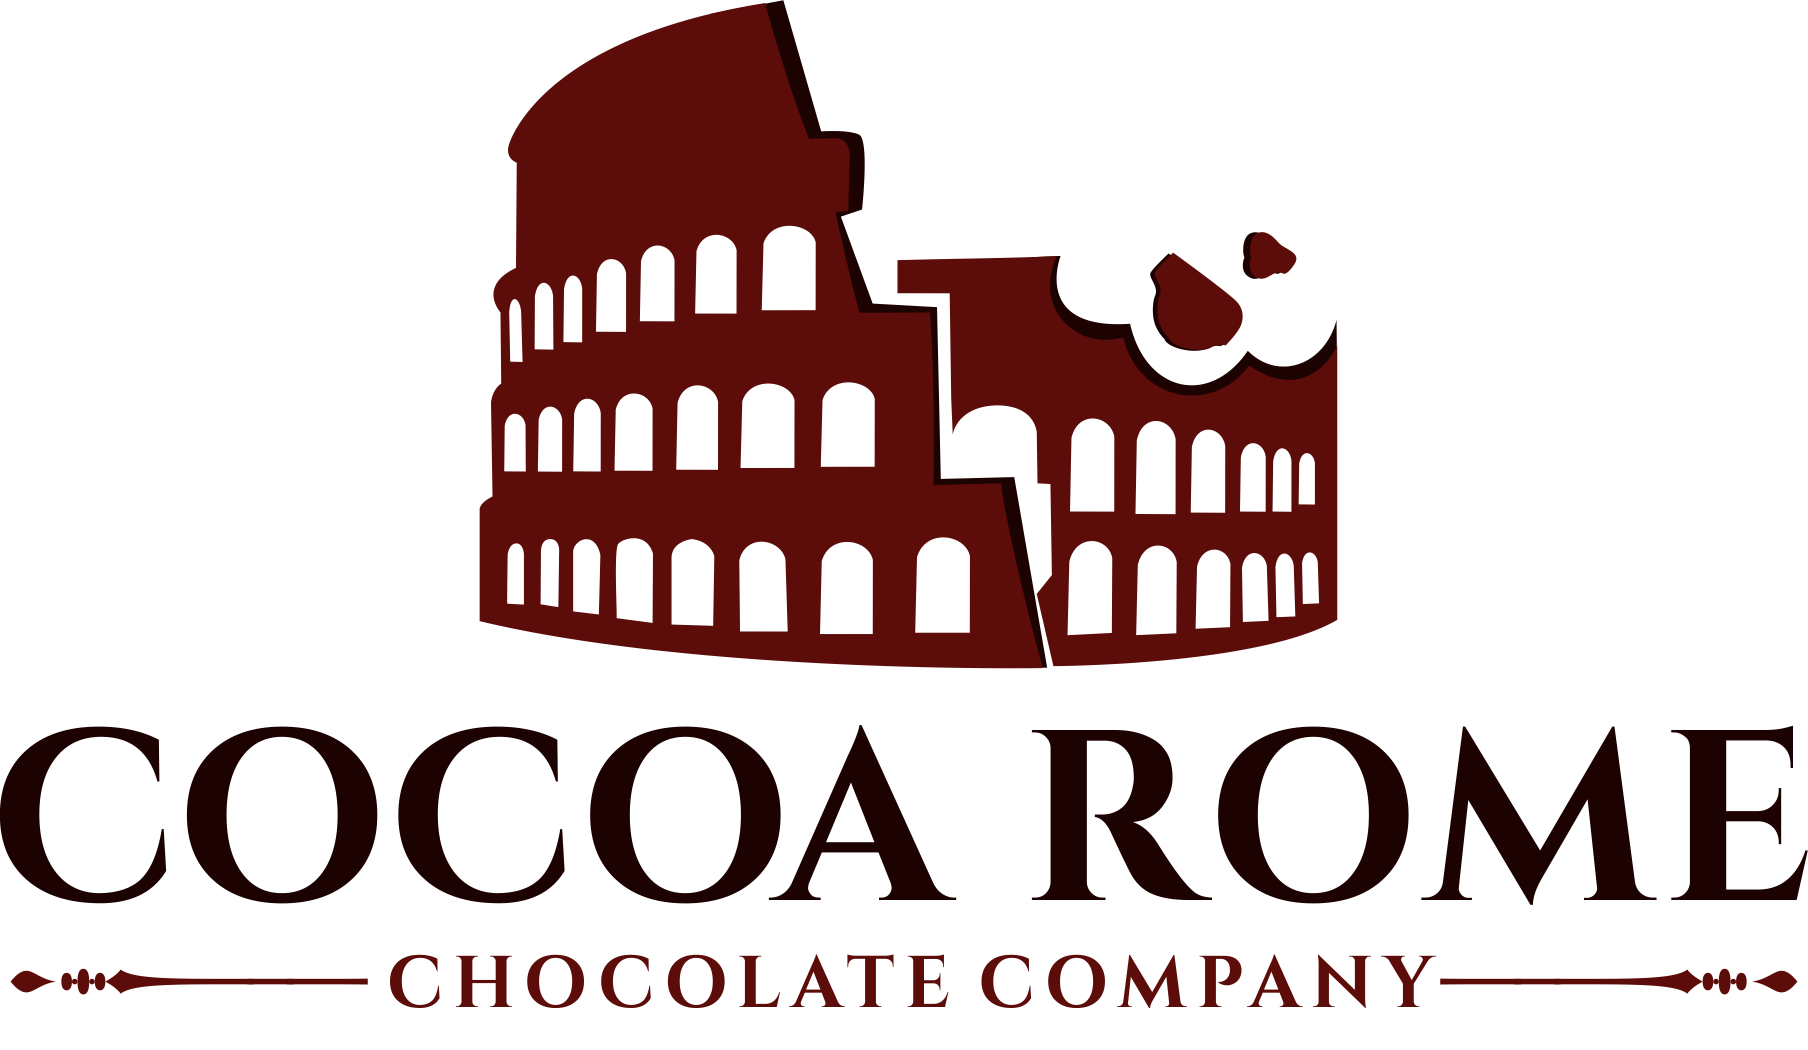 Cocoa Rome